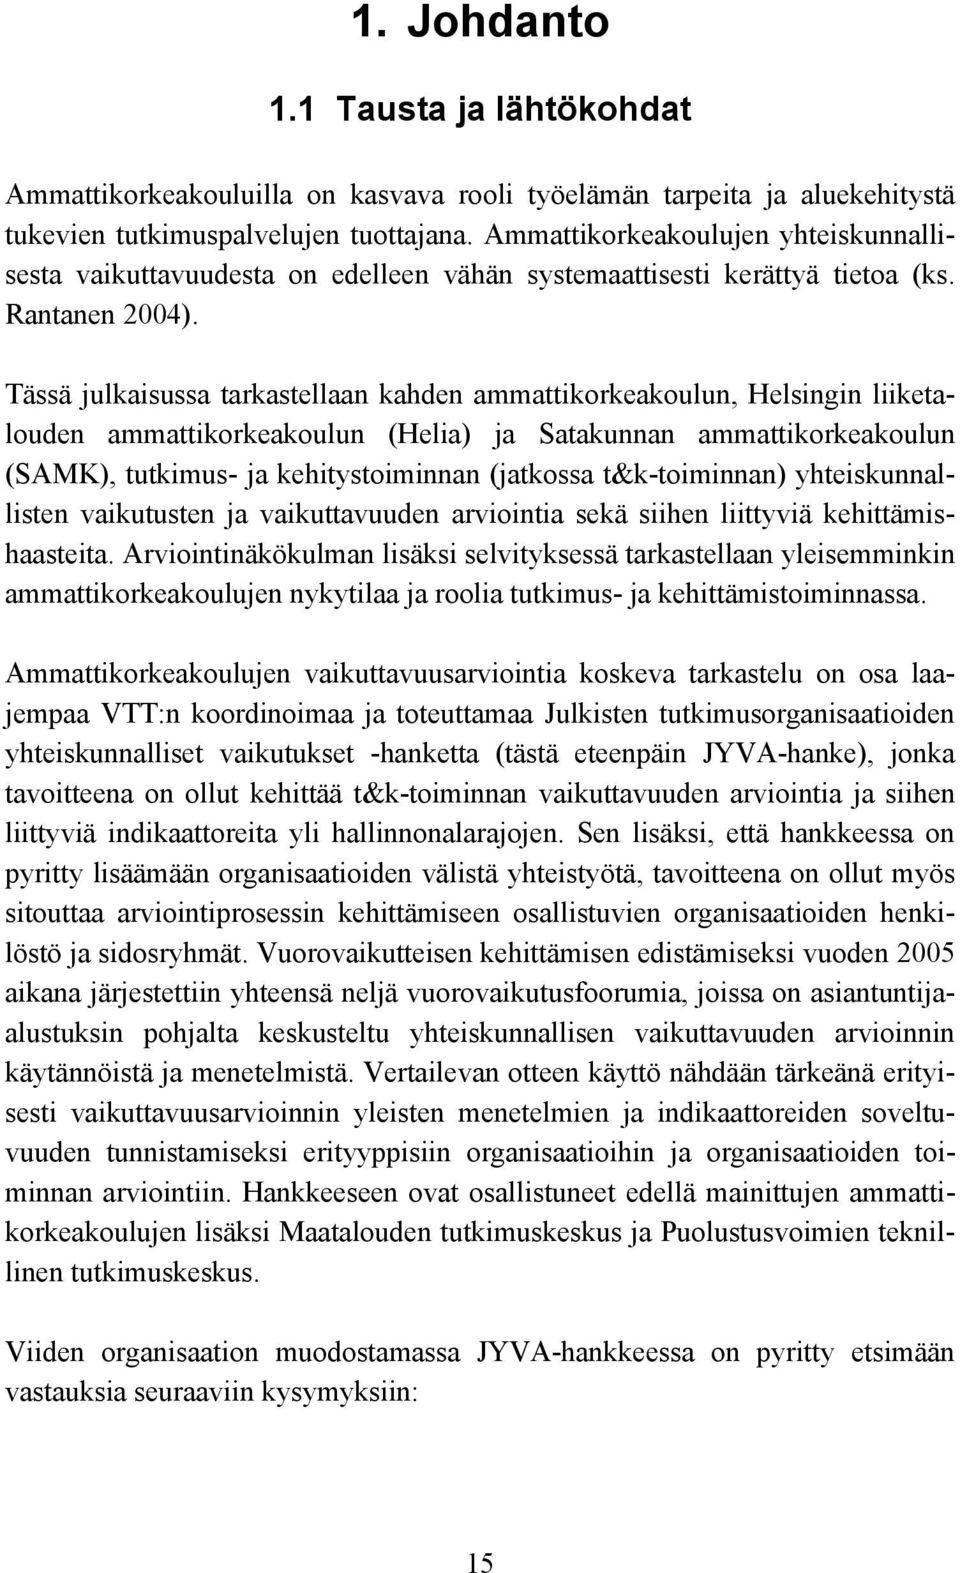 Tässä julkaisussa tarkastellaan kahden ammattikorkeakoulun, Helsingin liiketalouden ammattikorkeakoulun (Helia) ja Satakunnan ammattikorkeakoulun (SAMK), tutkimus- ja kehitystoiminnan (jatkossa